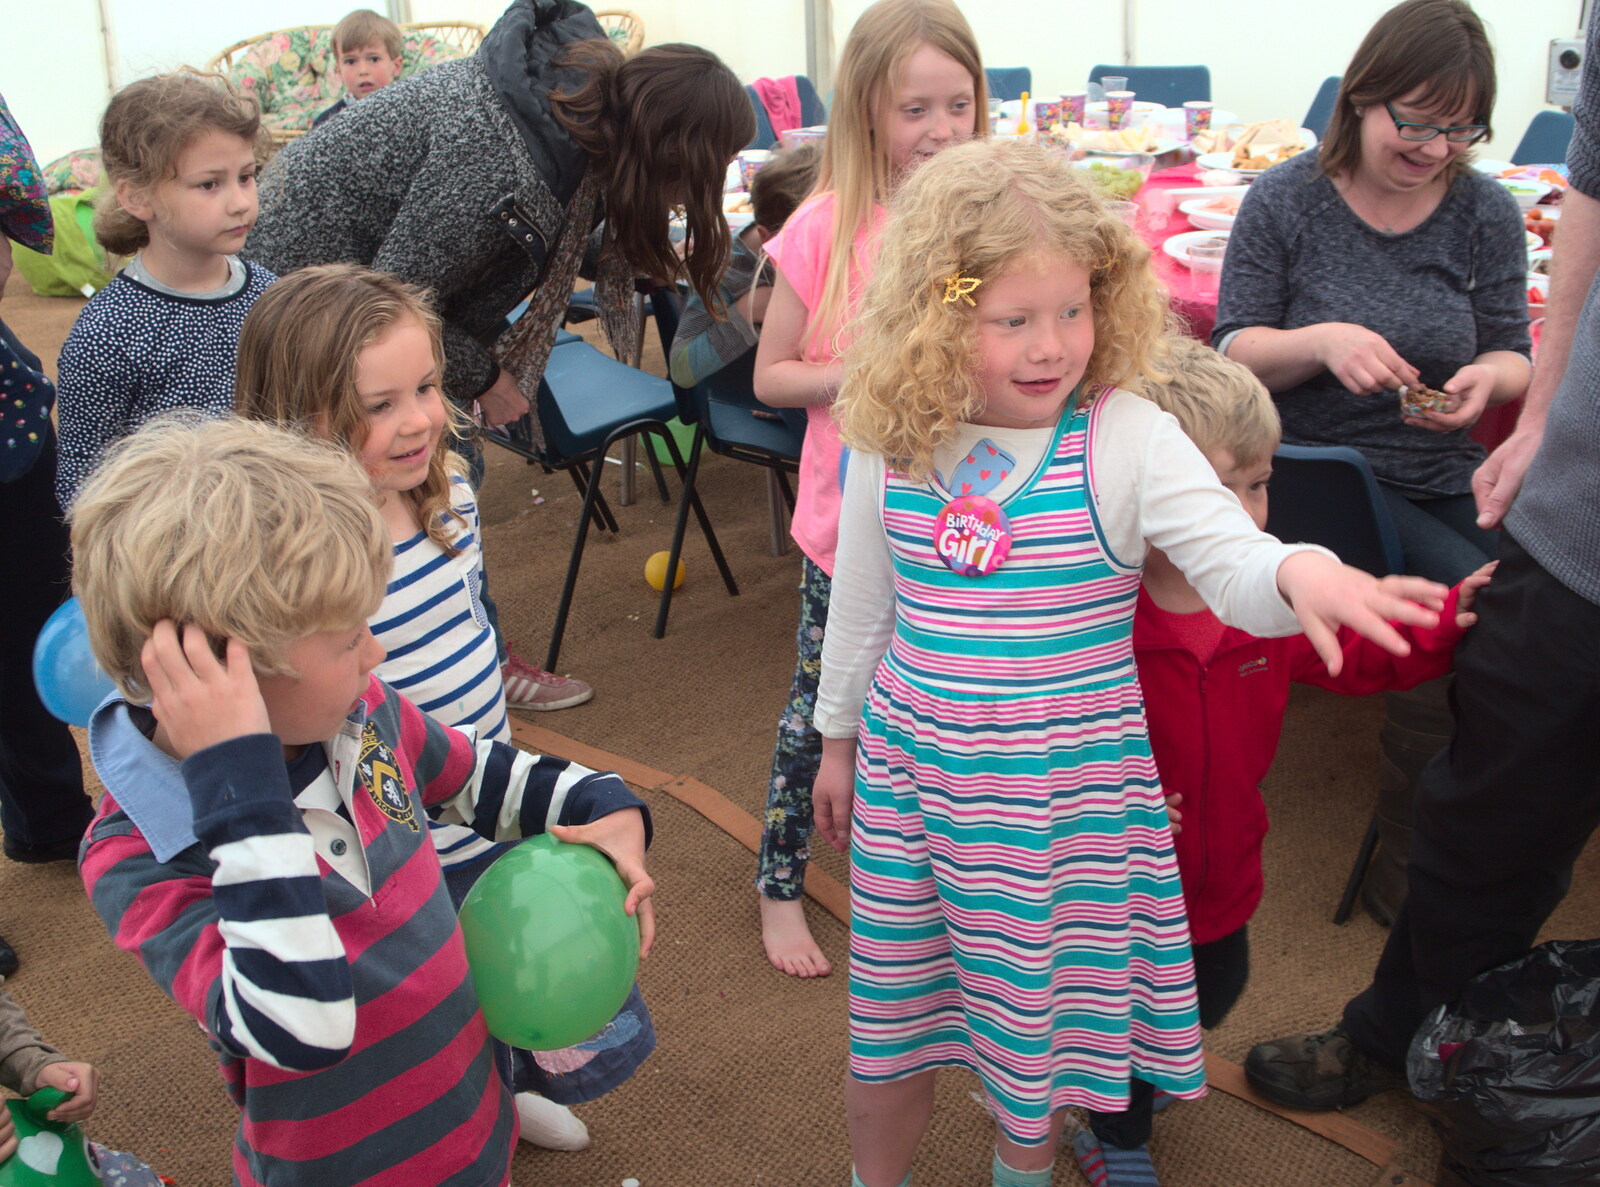 Rosie: Birthday girl from Making Dens: Rosie's Birthday, Thornham, Suffolk - 25th April 2015